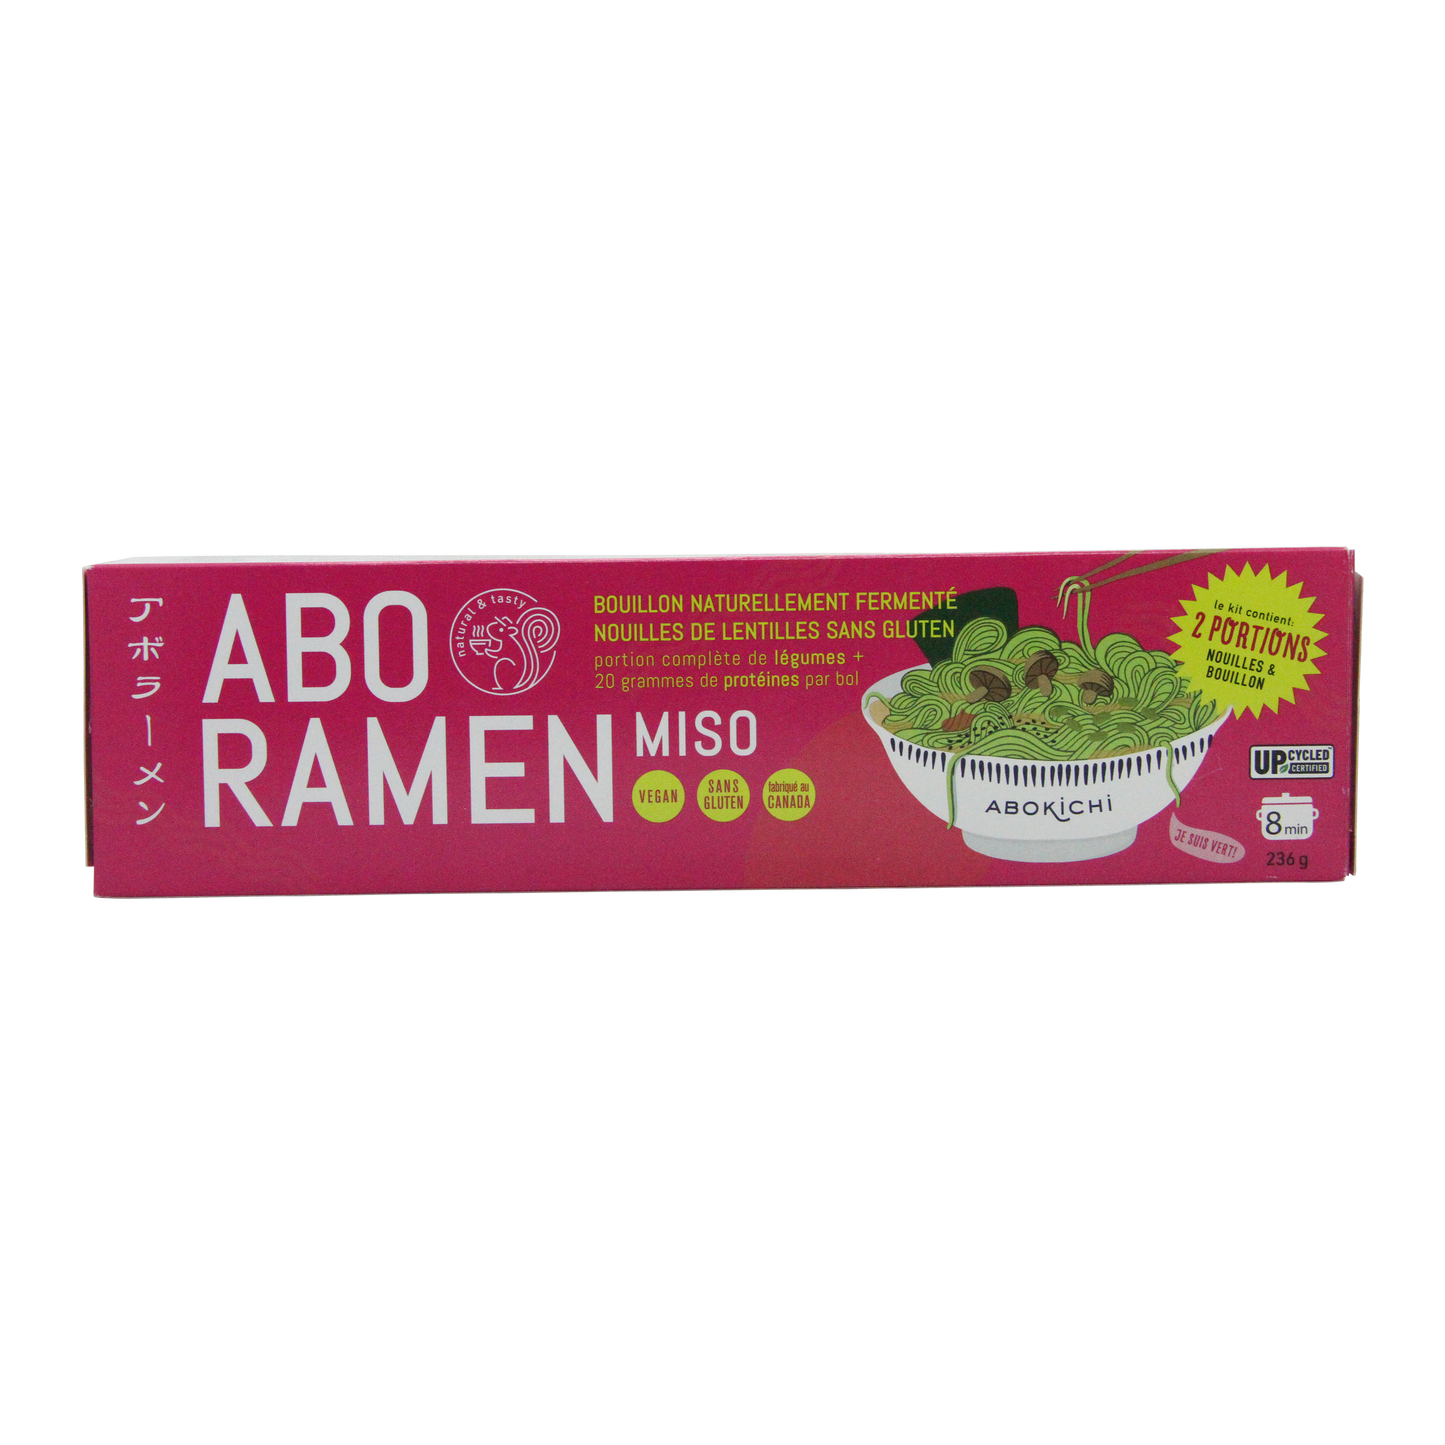 ABO Ramen (Gluten-free) - Classic Miso - 2 servings/unit